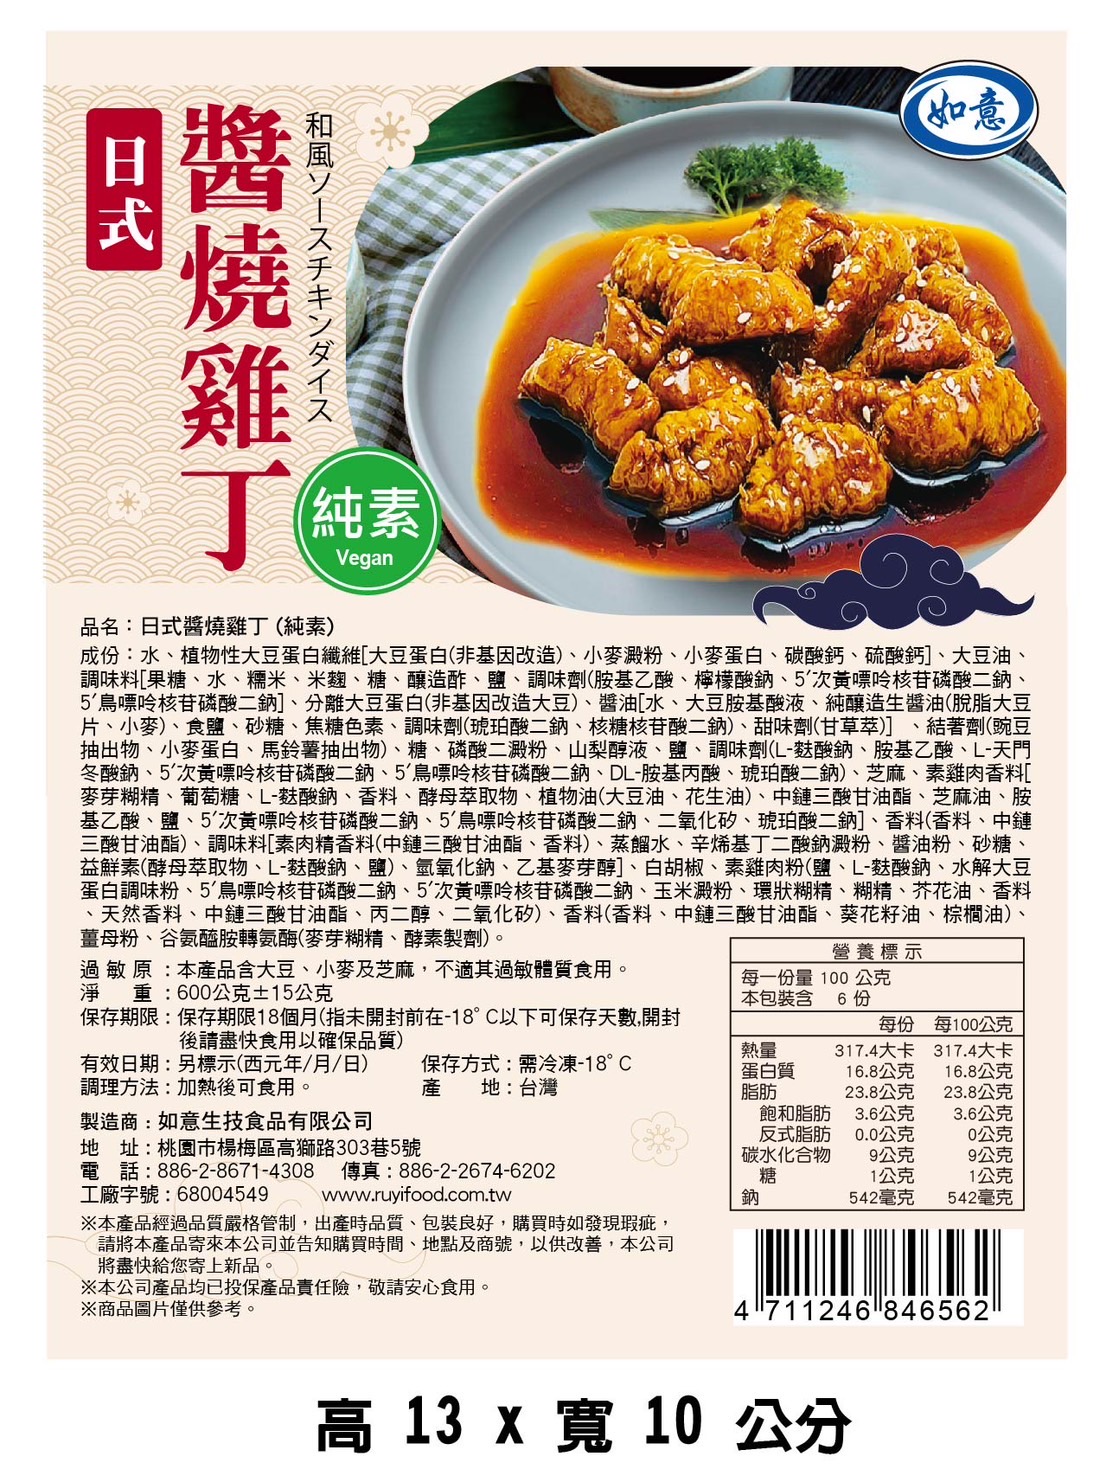 【如意生技】純素日式醬燒雞排雞丁任選 (600g/包)